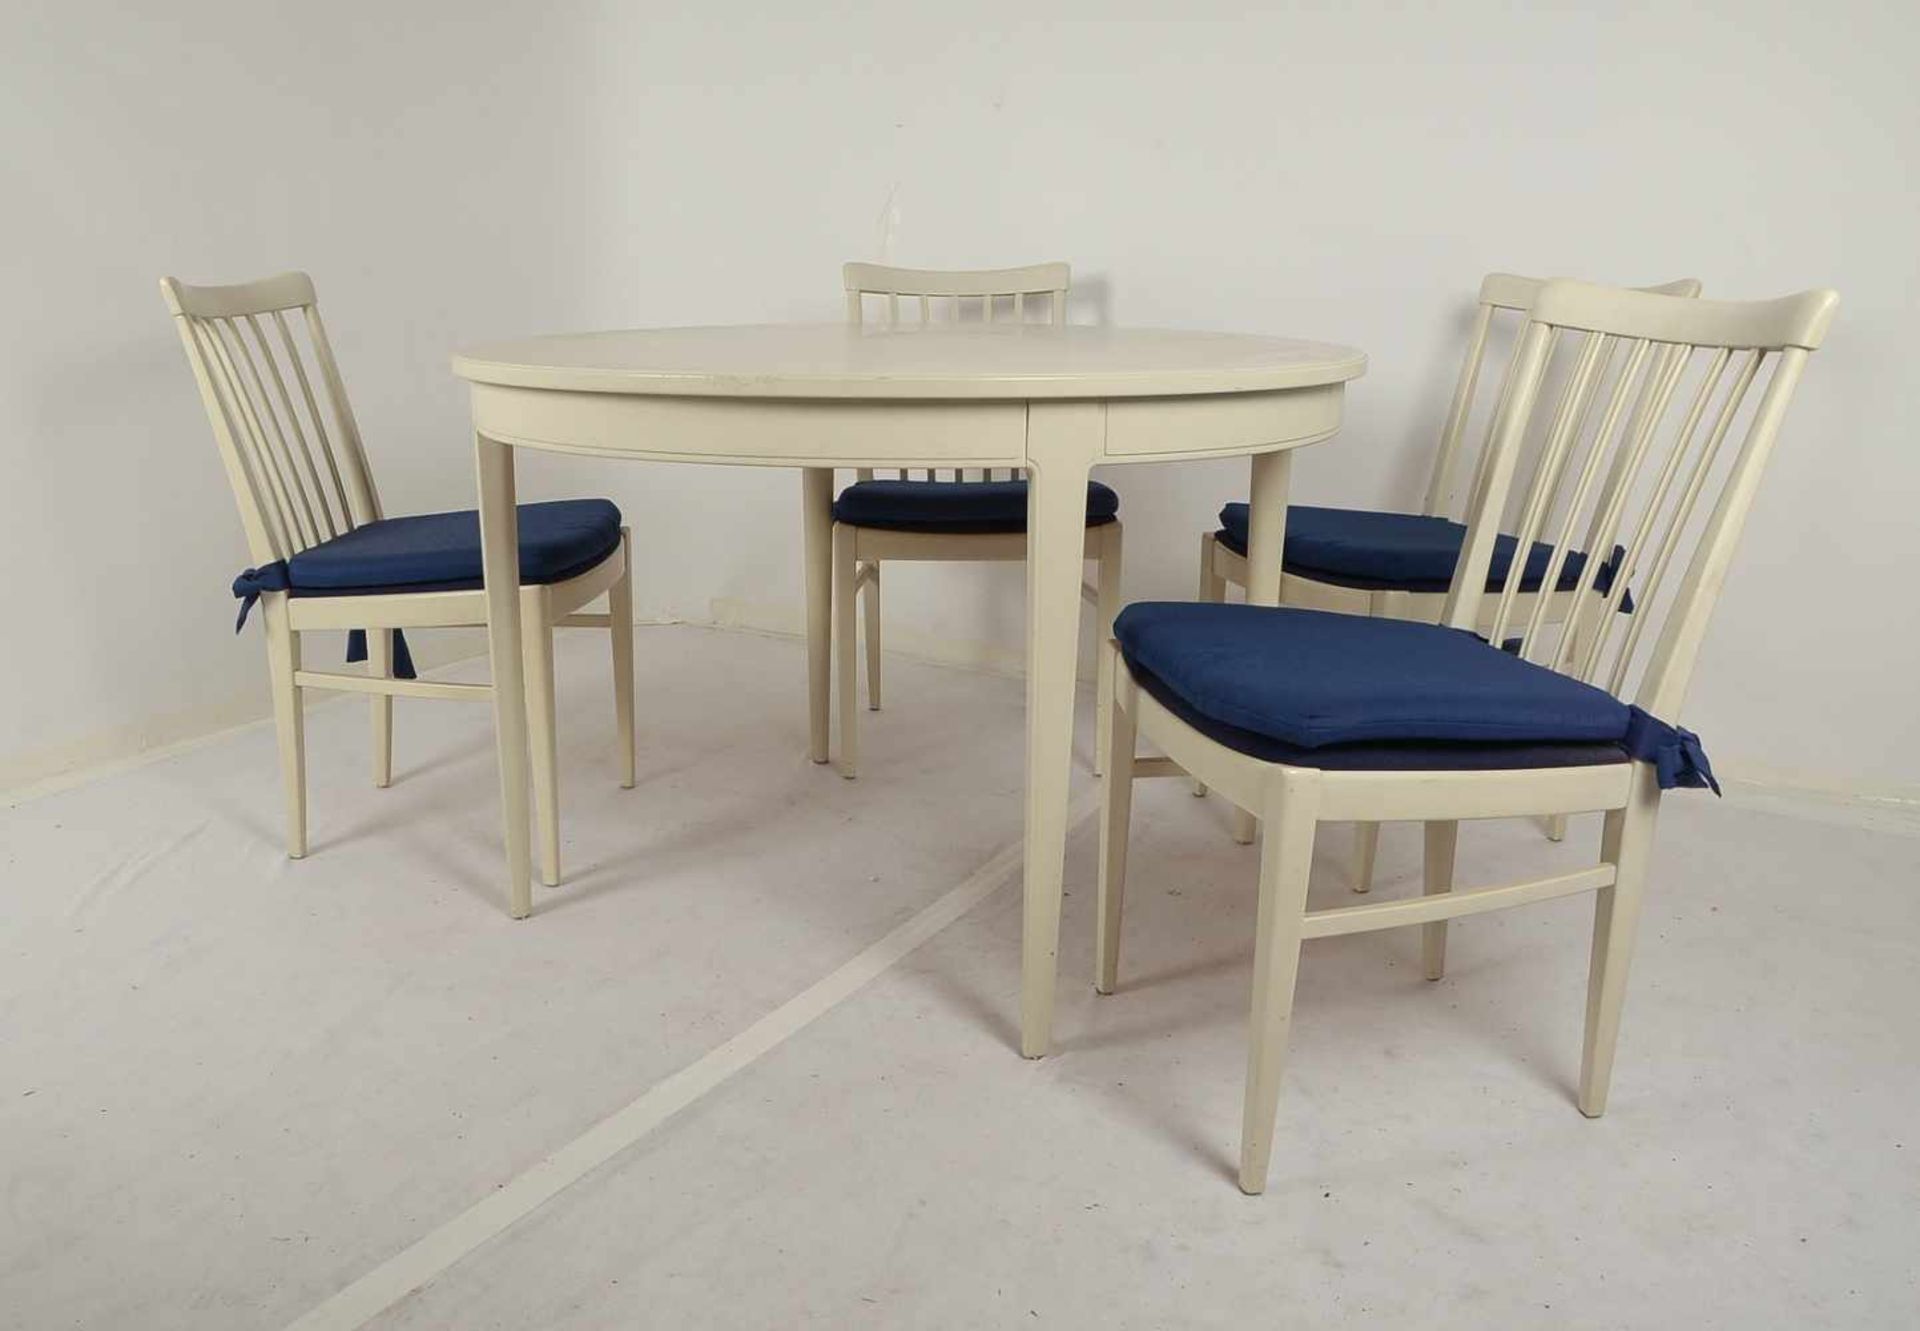 Bodafors/Schweden, Tisch und 4 Stühle, creme-weiß gefasst, Entwurf: Carl Malmsten, Tisch - Bild 2 aus 2